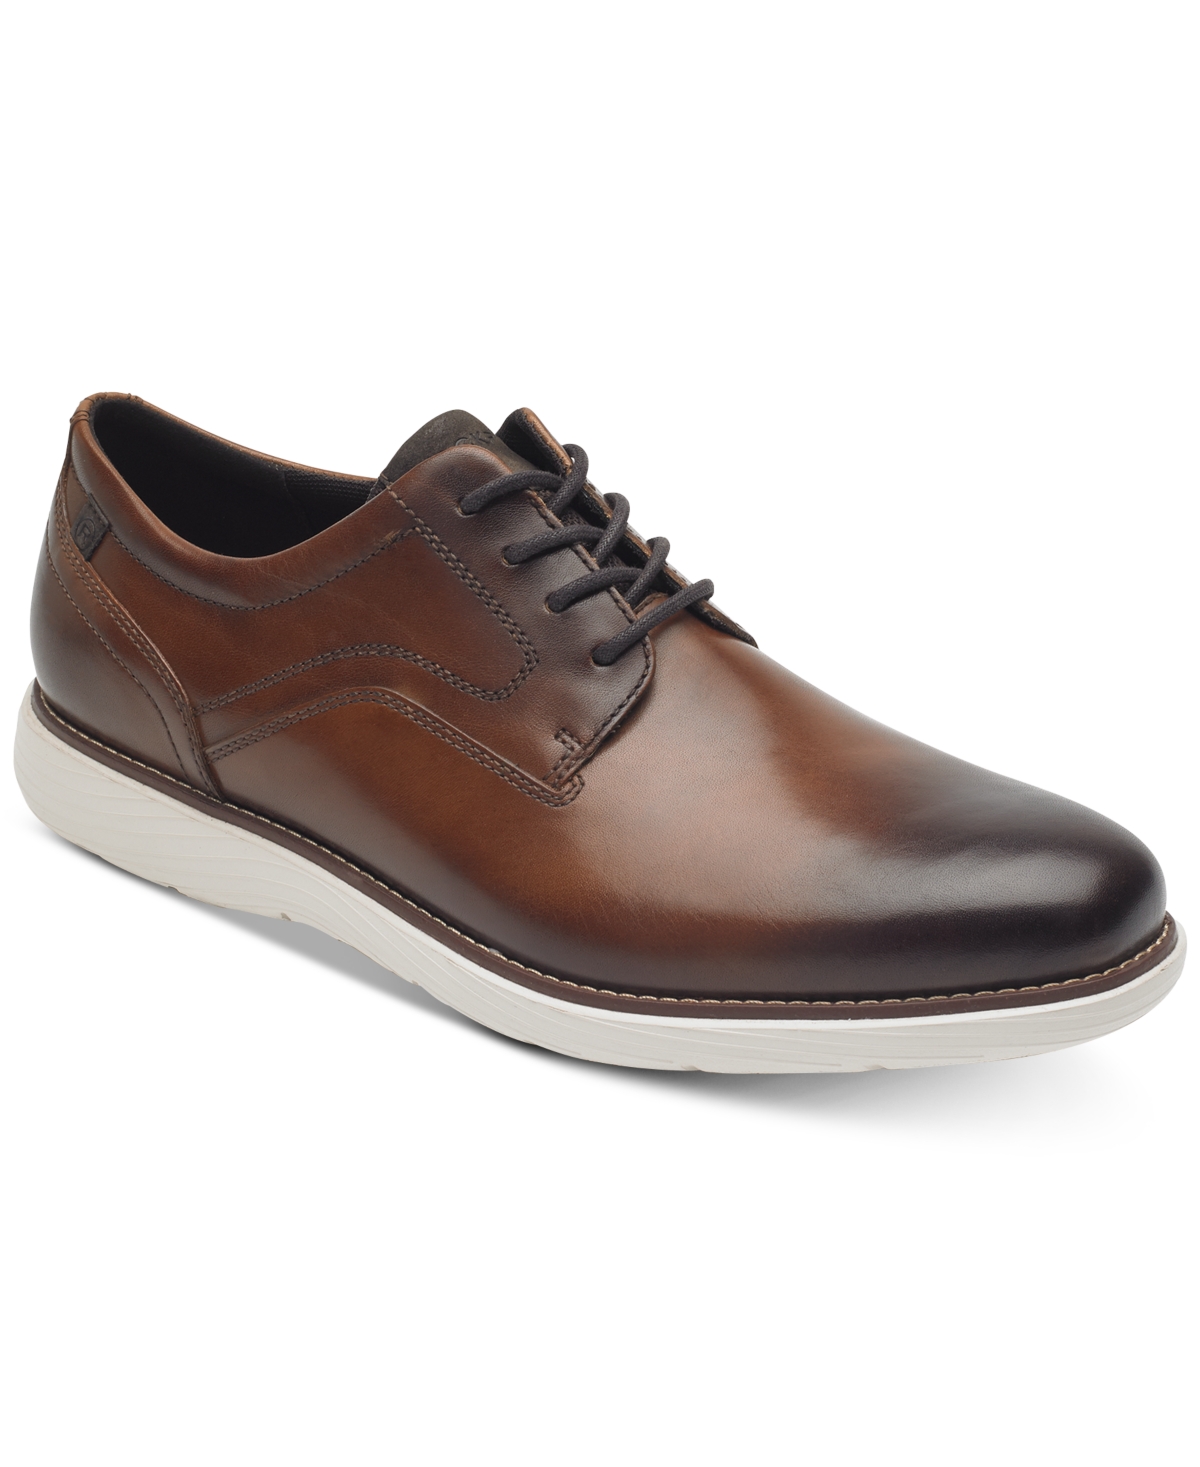 Men's Garett Plain Toe Oxford Shoes - Cognac